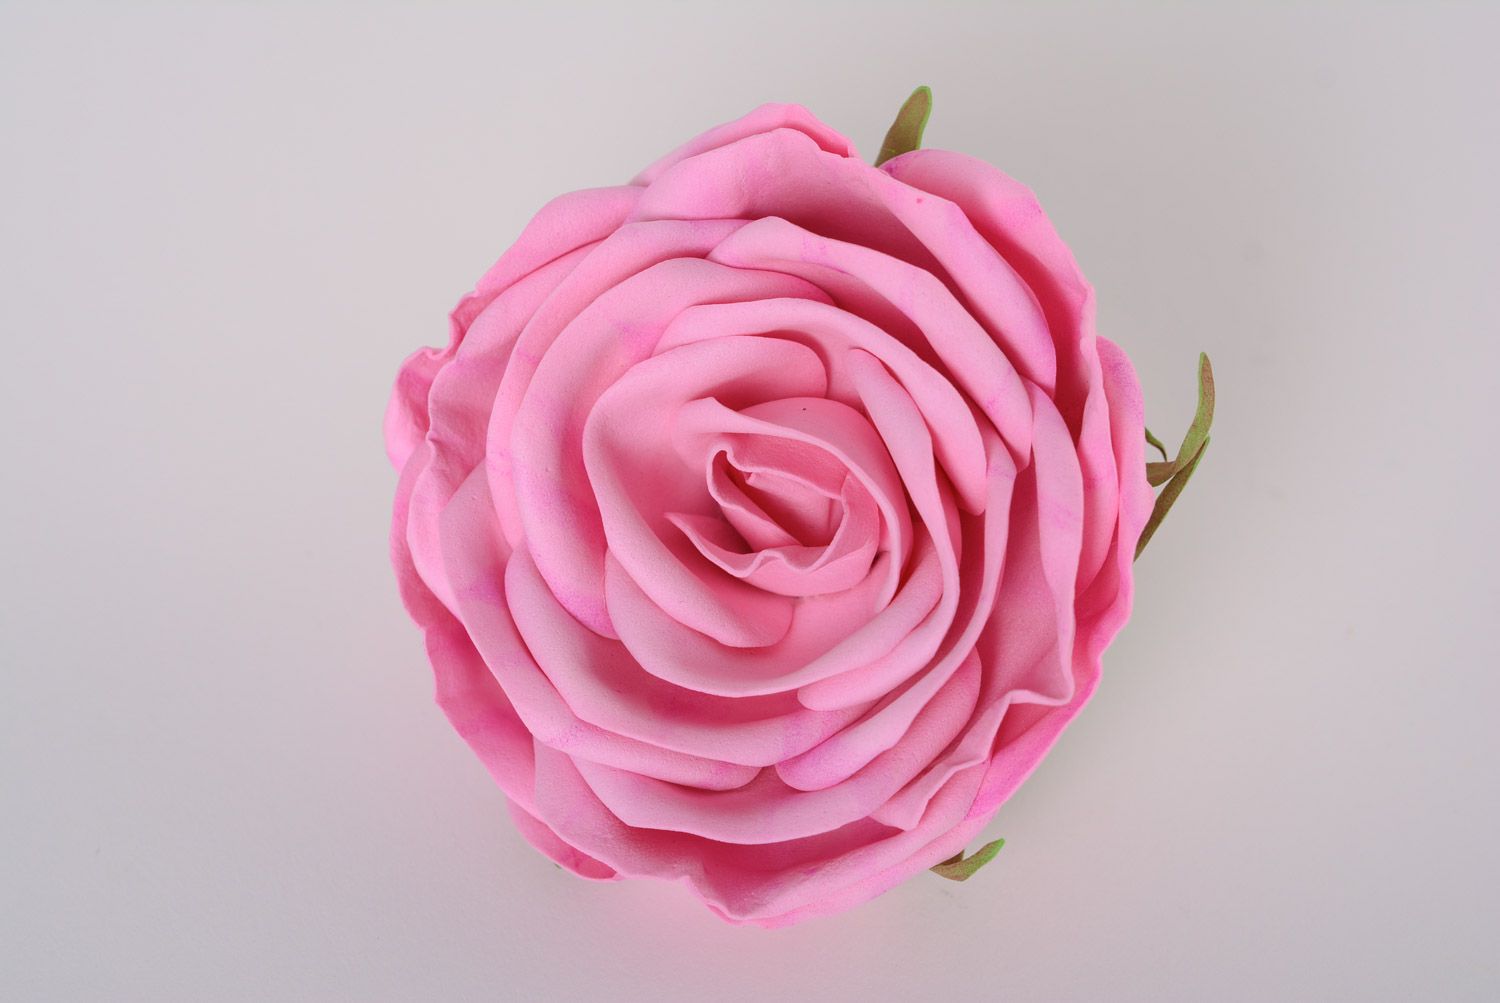 Резинка для волос ручной работы с розой из фоамирана розовая крупная нарядная фото 1